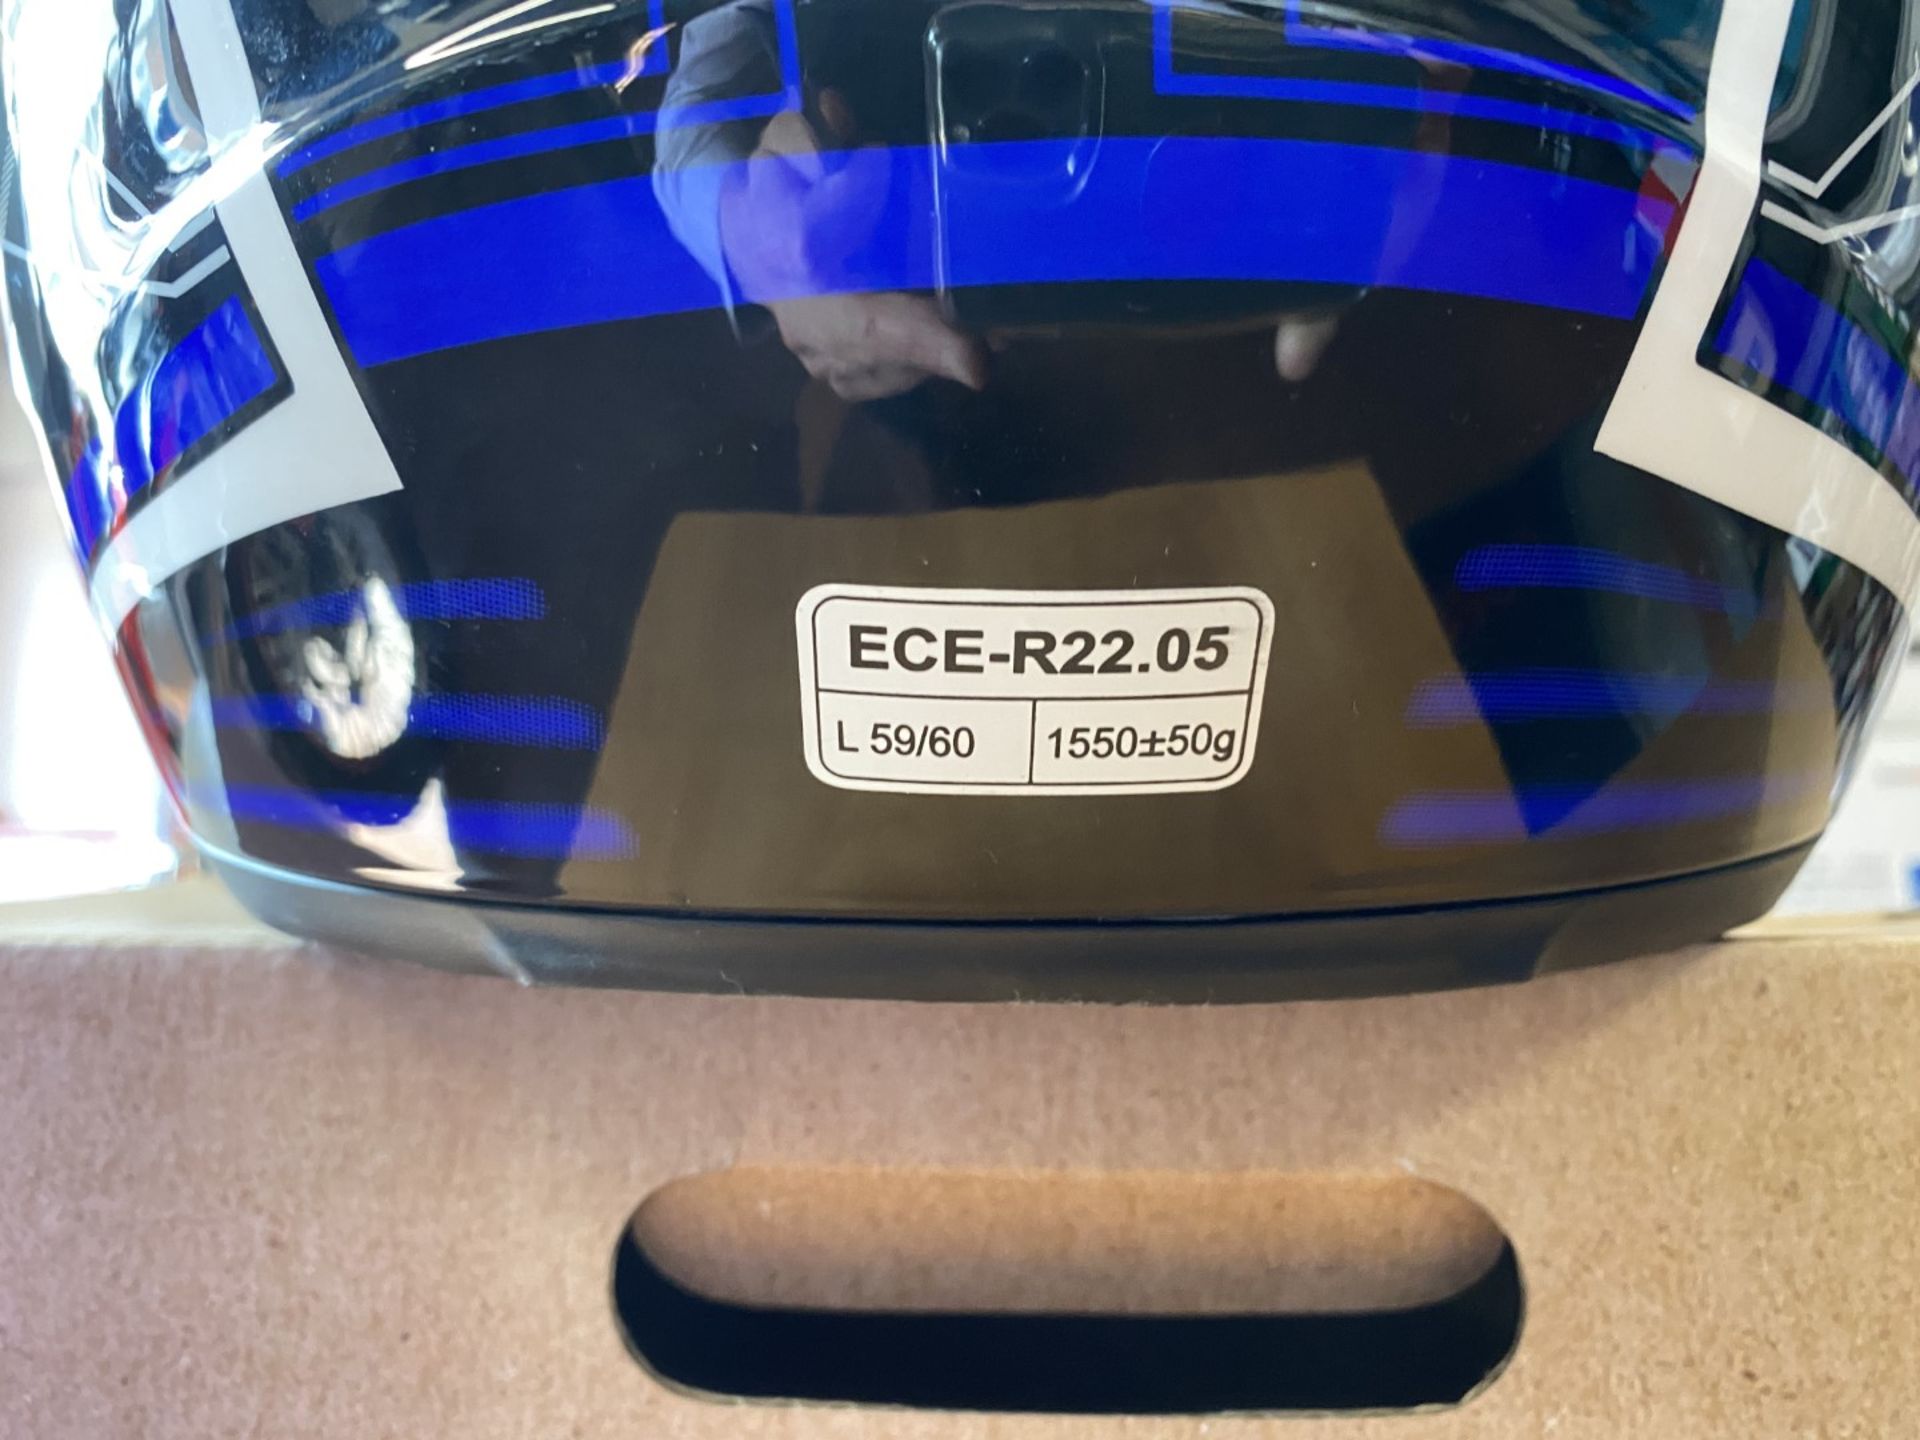 Spada Helmet Matt White/Blue/Black Large - Motorcycle / Motorbike Helmet - RRP £99.00 - Image 4 of 4